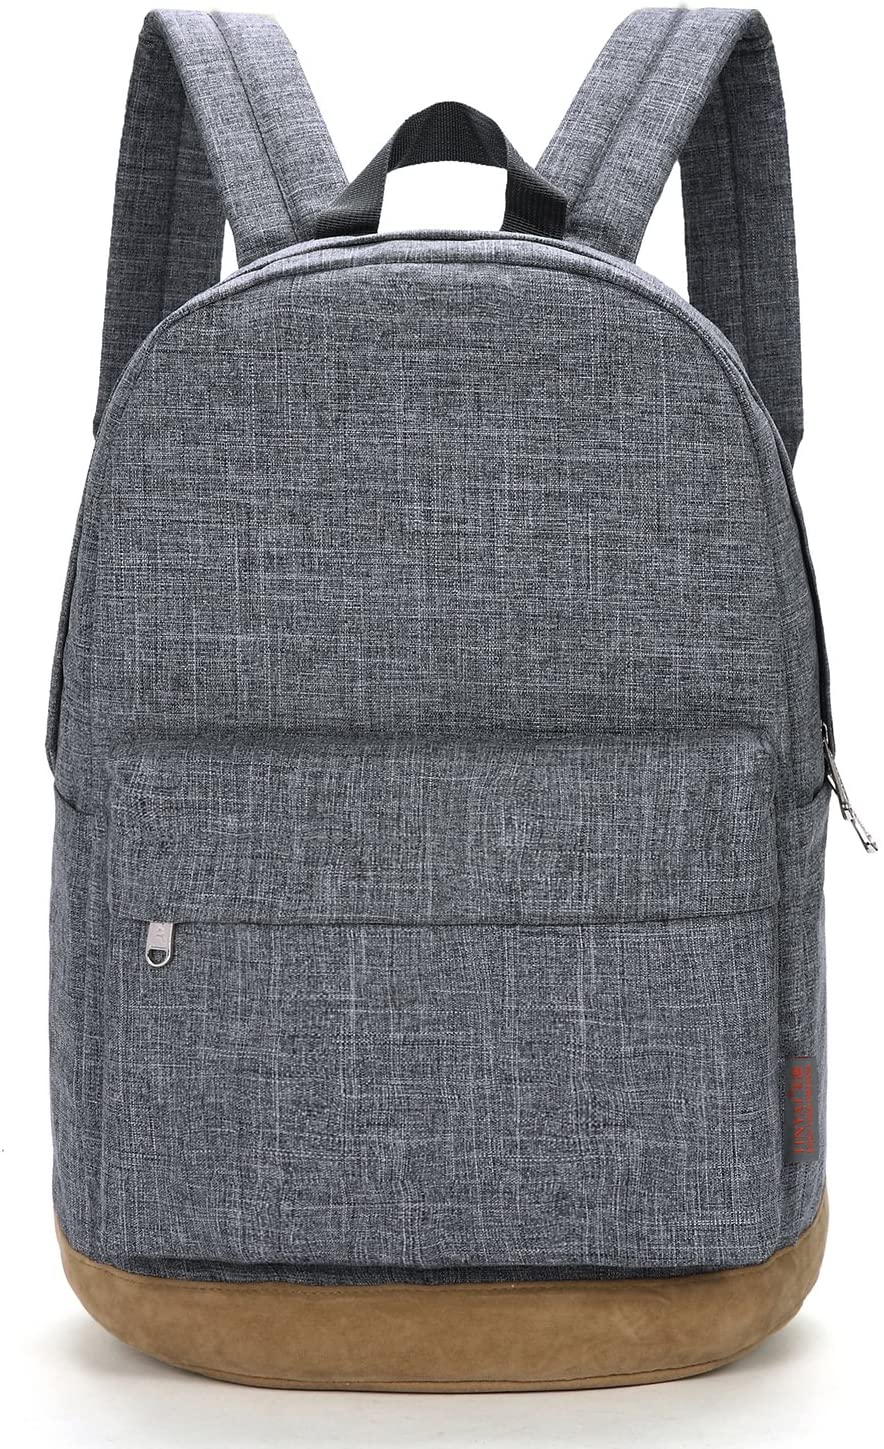 TINYAT Durable Laptop Backpack Bussiness Bag School Bookbag Travel Daypack for Women and Men,Canvas Nylon T101 